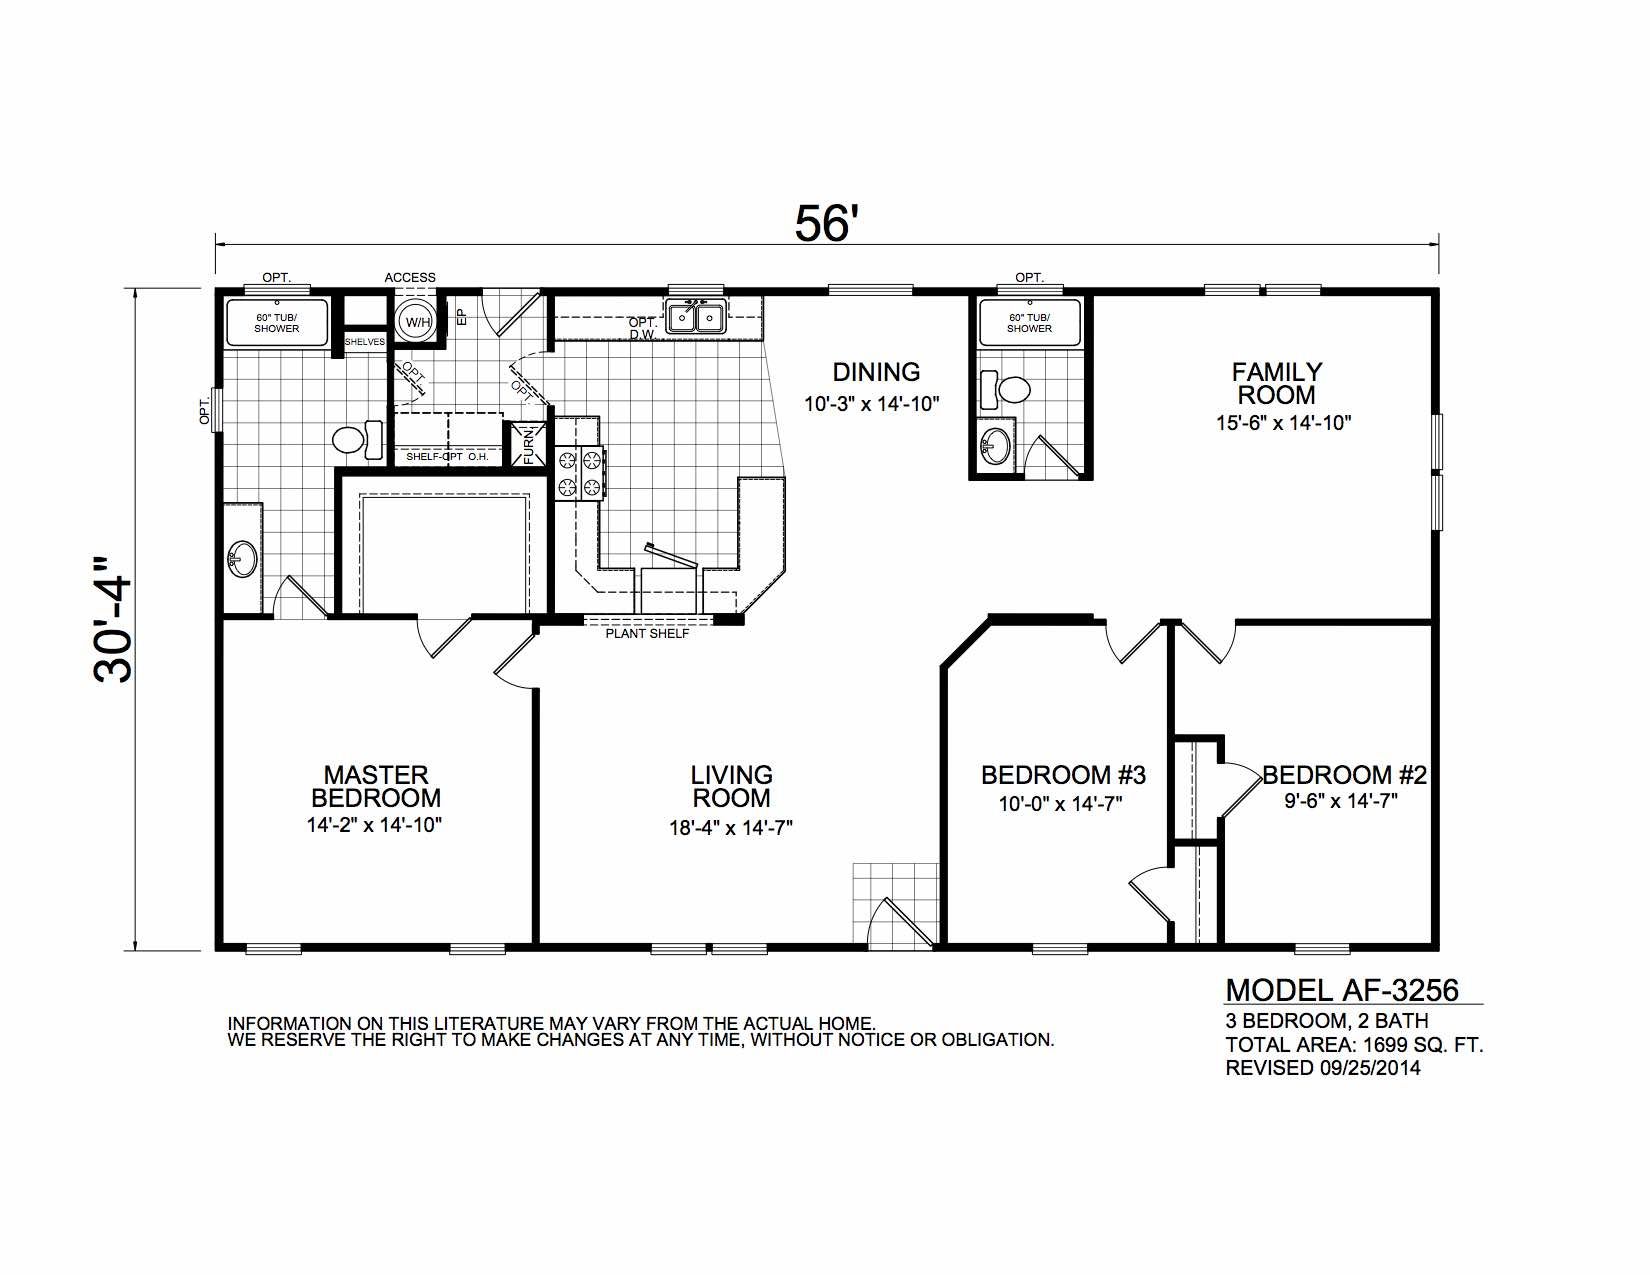 Homes Direct Modular Homes - Model AF3256 - Floorplan